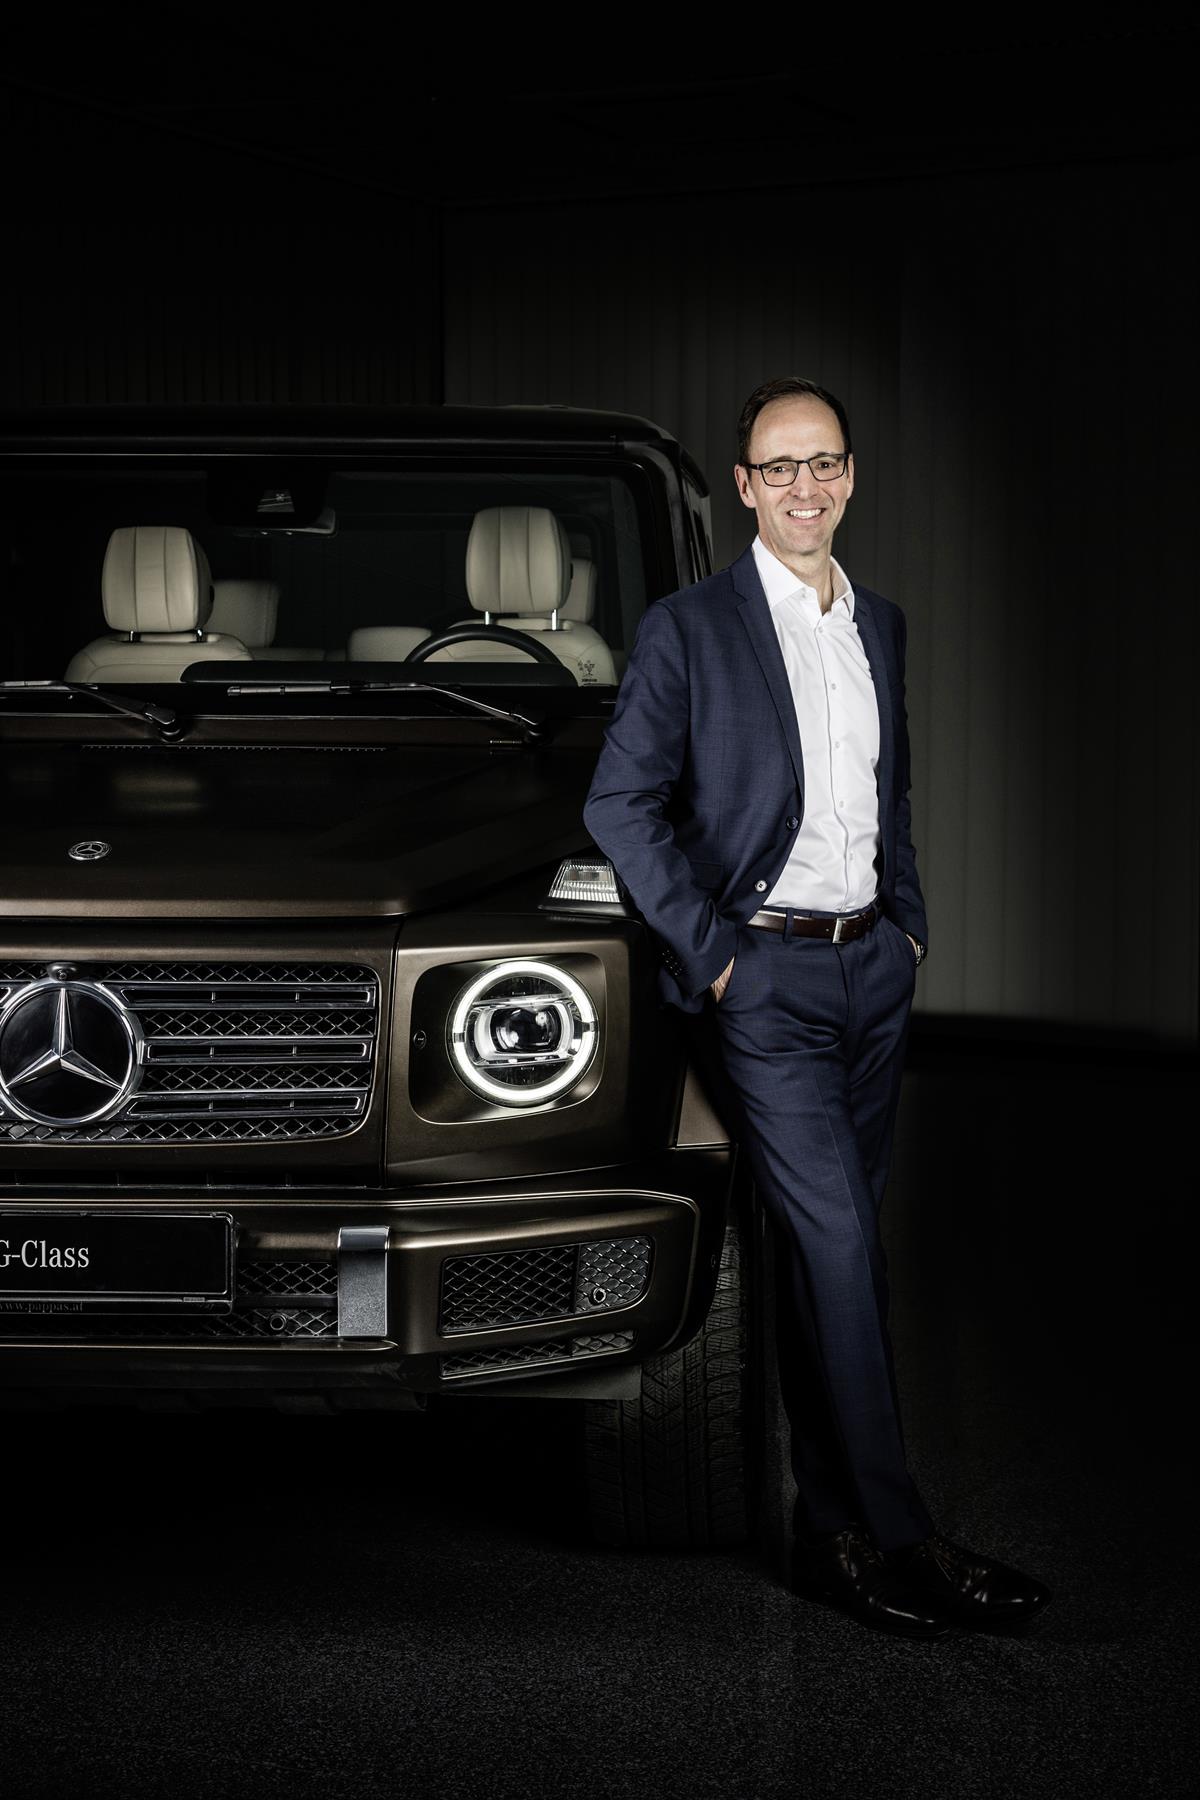 PI_Best_Cars_2020: Dr. Emmerich Schiller, Leiter des Produktbereichs Geländewagen, nimmt Preis für G-Klasse entgegen